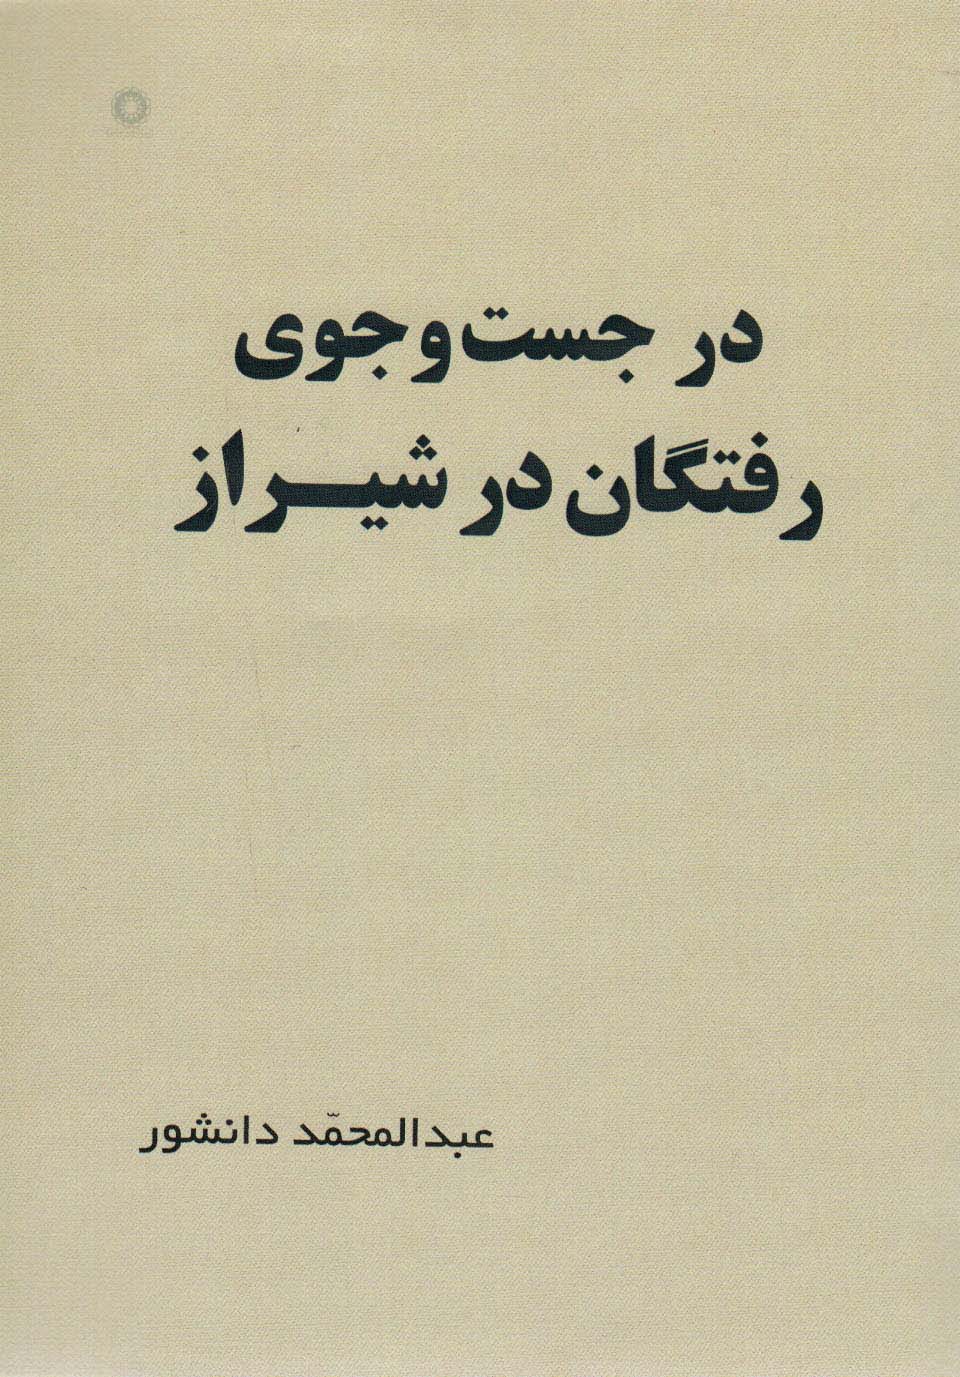  کتاب در جست و جوی رفتگان در شیراز